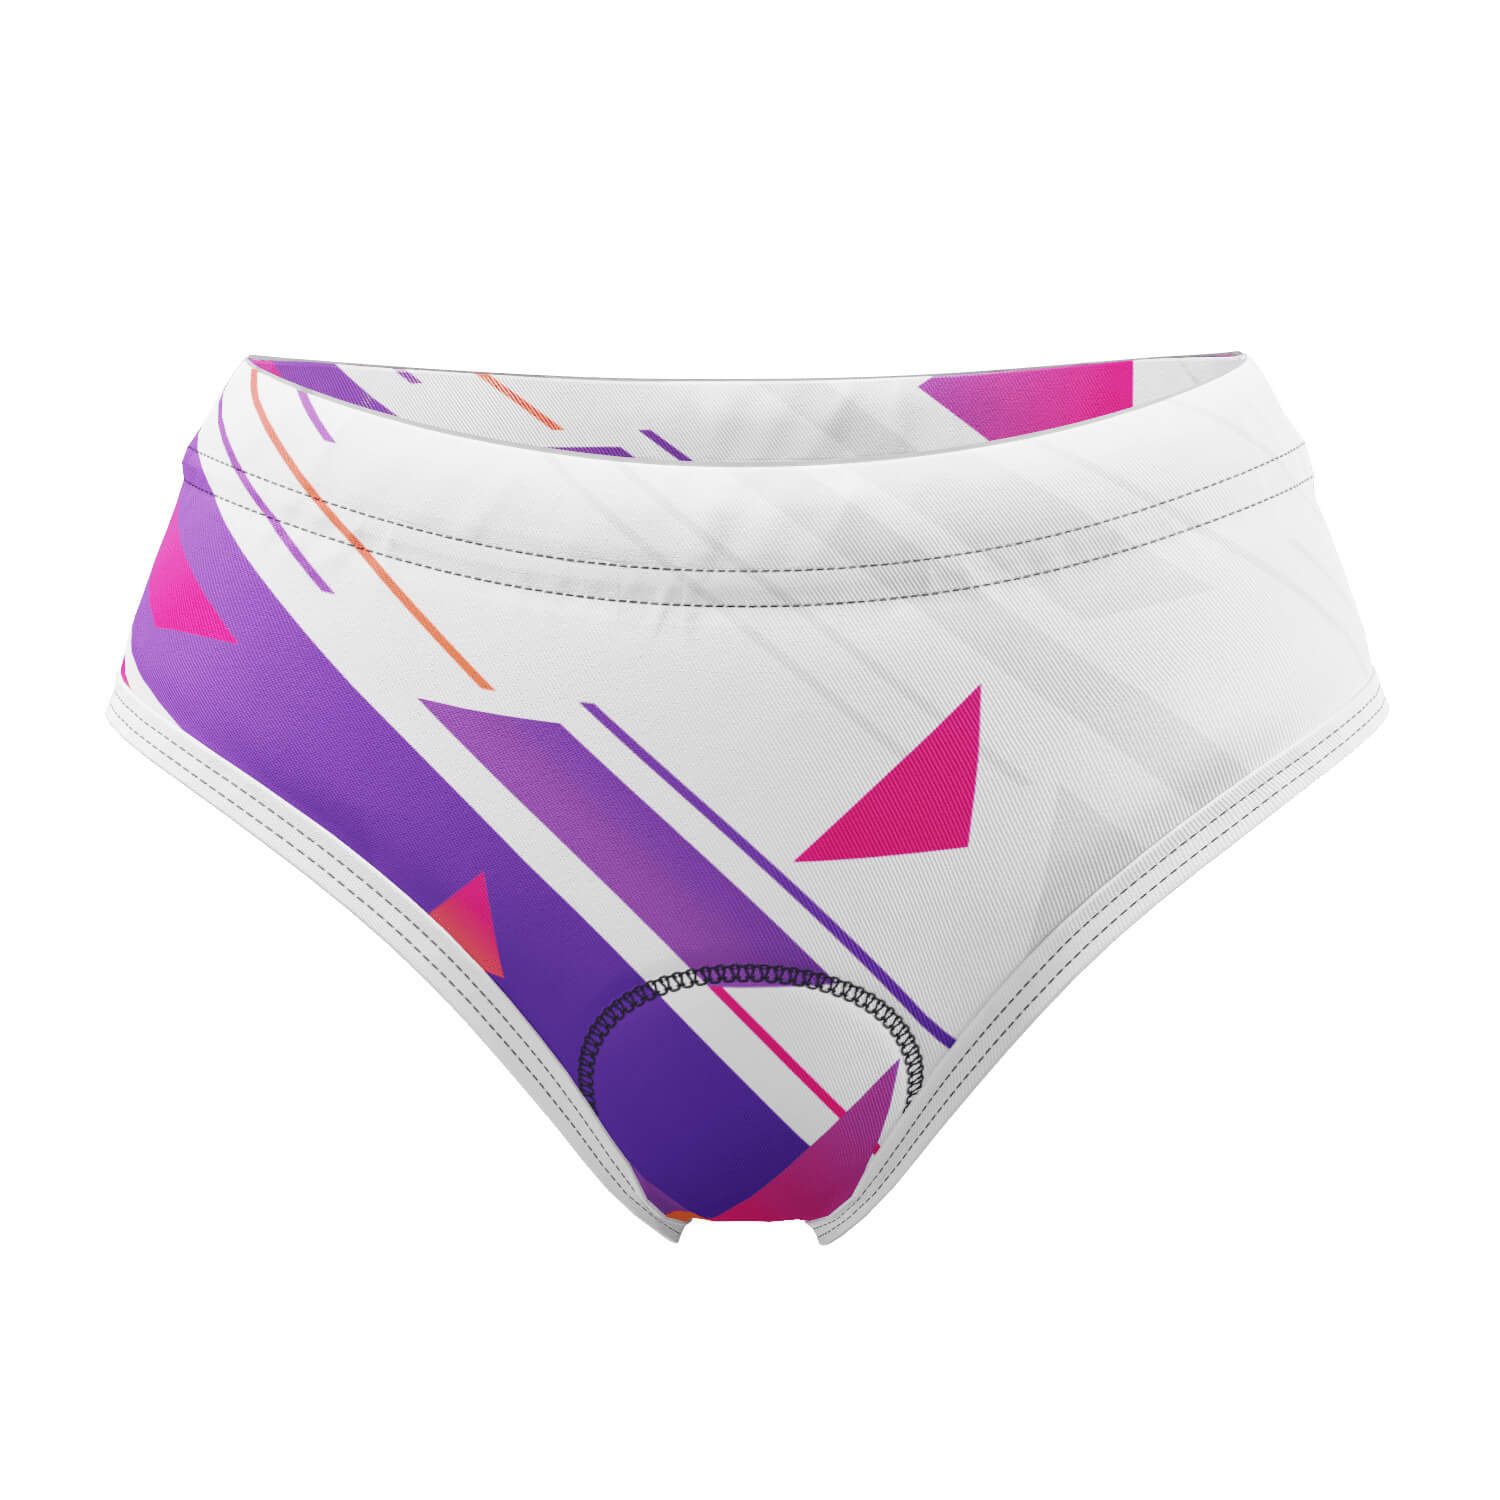 Women's Purple Geometry Gel Padded Cycling Underwear-Briefs